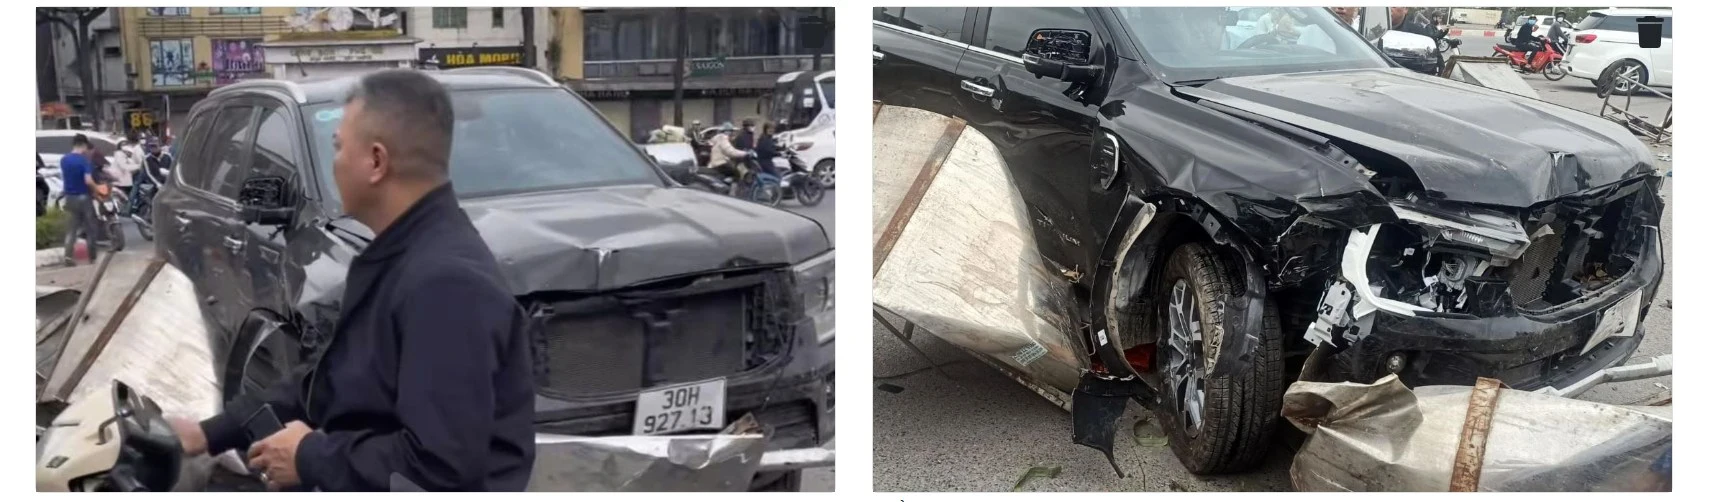 Rao Toyota Vios 2014 'zin cả xe' giá 230 triệu, người bán bị nghi ngờ lừa dối sau loạt ảnh xe tai nạn nát bét với biển số giống hệt - Ảnh 6.